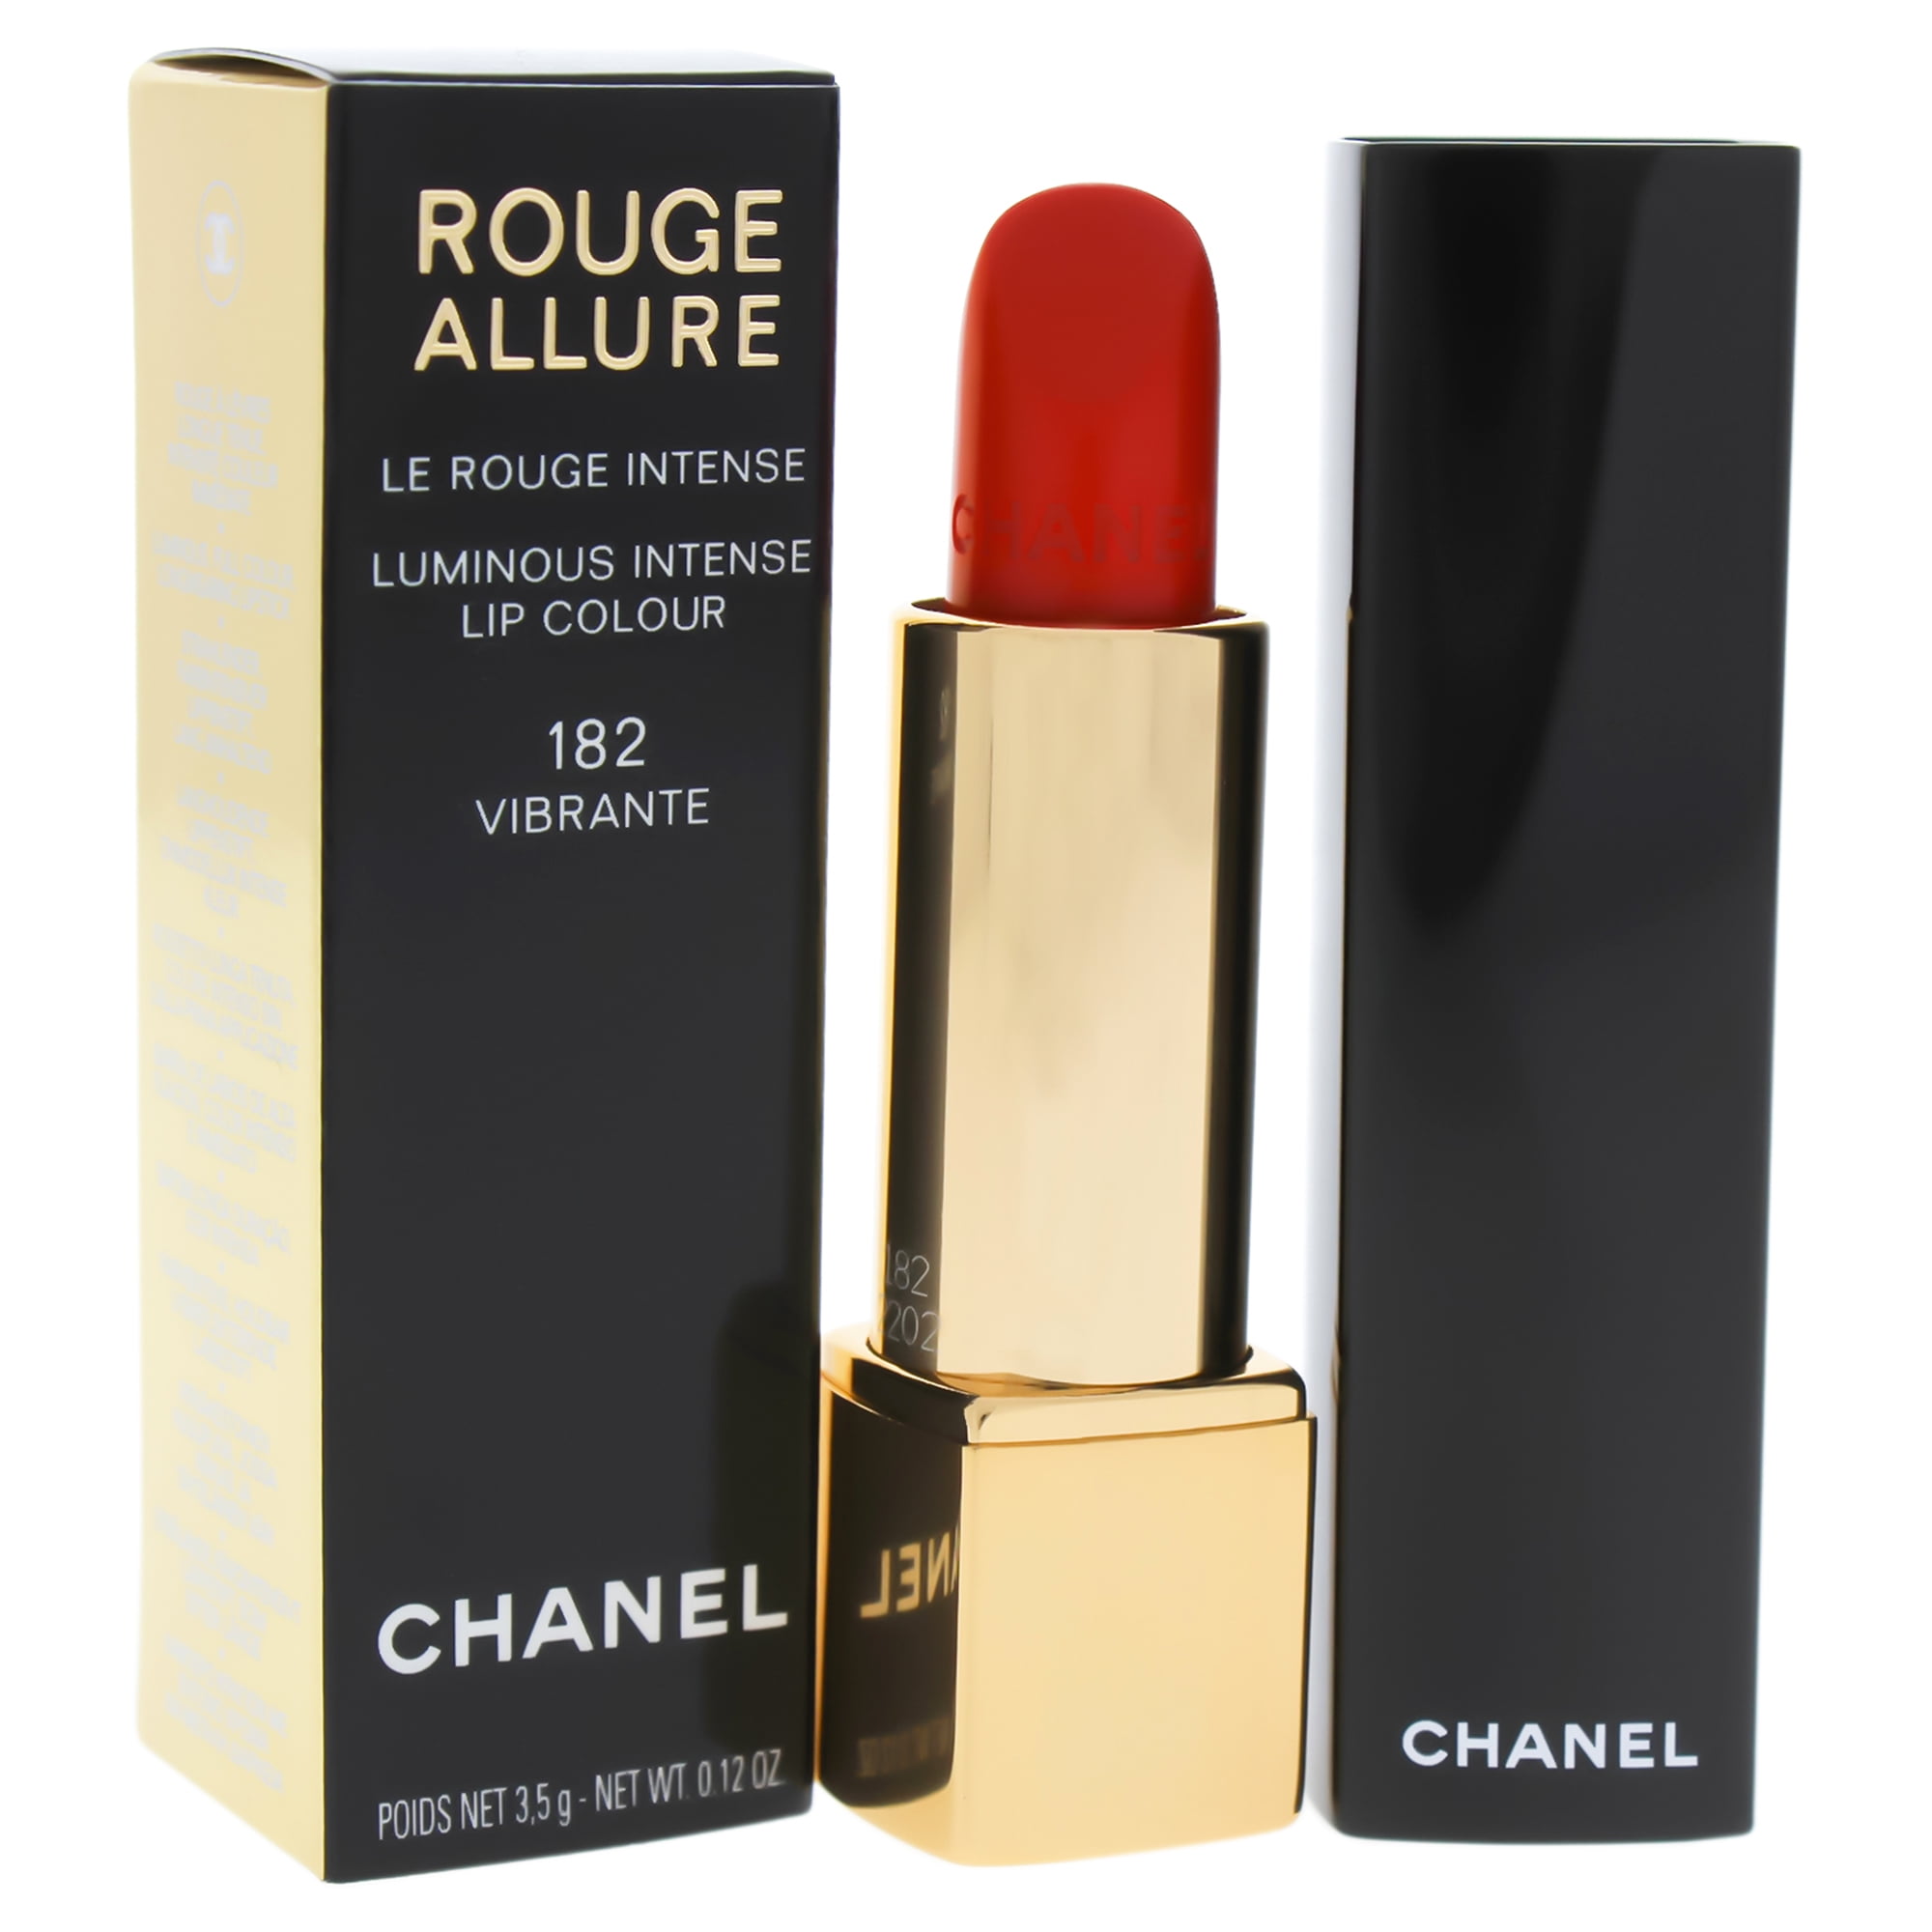 Chanel Rouge Allure Luminous Intense Lip Colour - # 182 Vibrante - Stylemyle